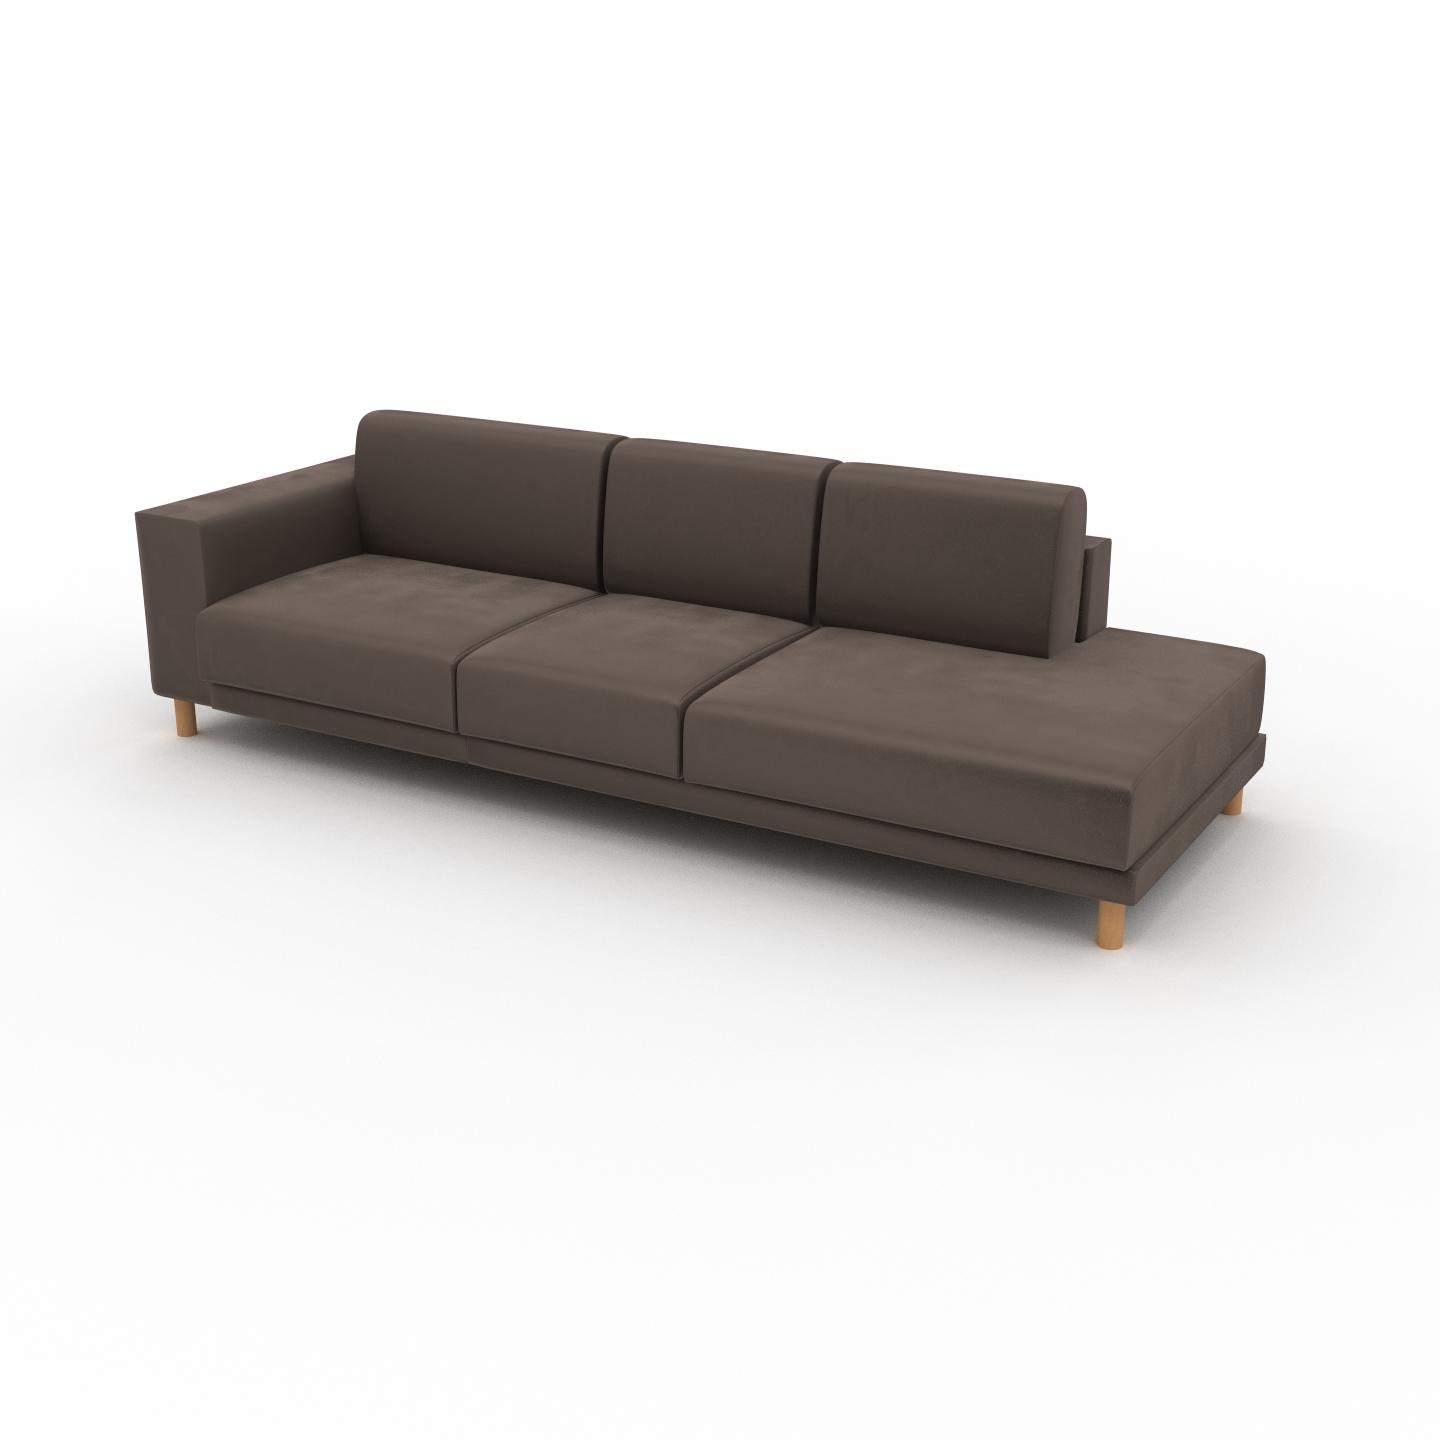 MYCS Sofa Samt Taupegrau - Moderne Designer-Couch: Hochwertige Qualität, einzigartiges Design - 264 x 75 x 98 cm, Komplett anpassbar